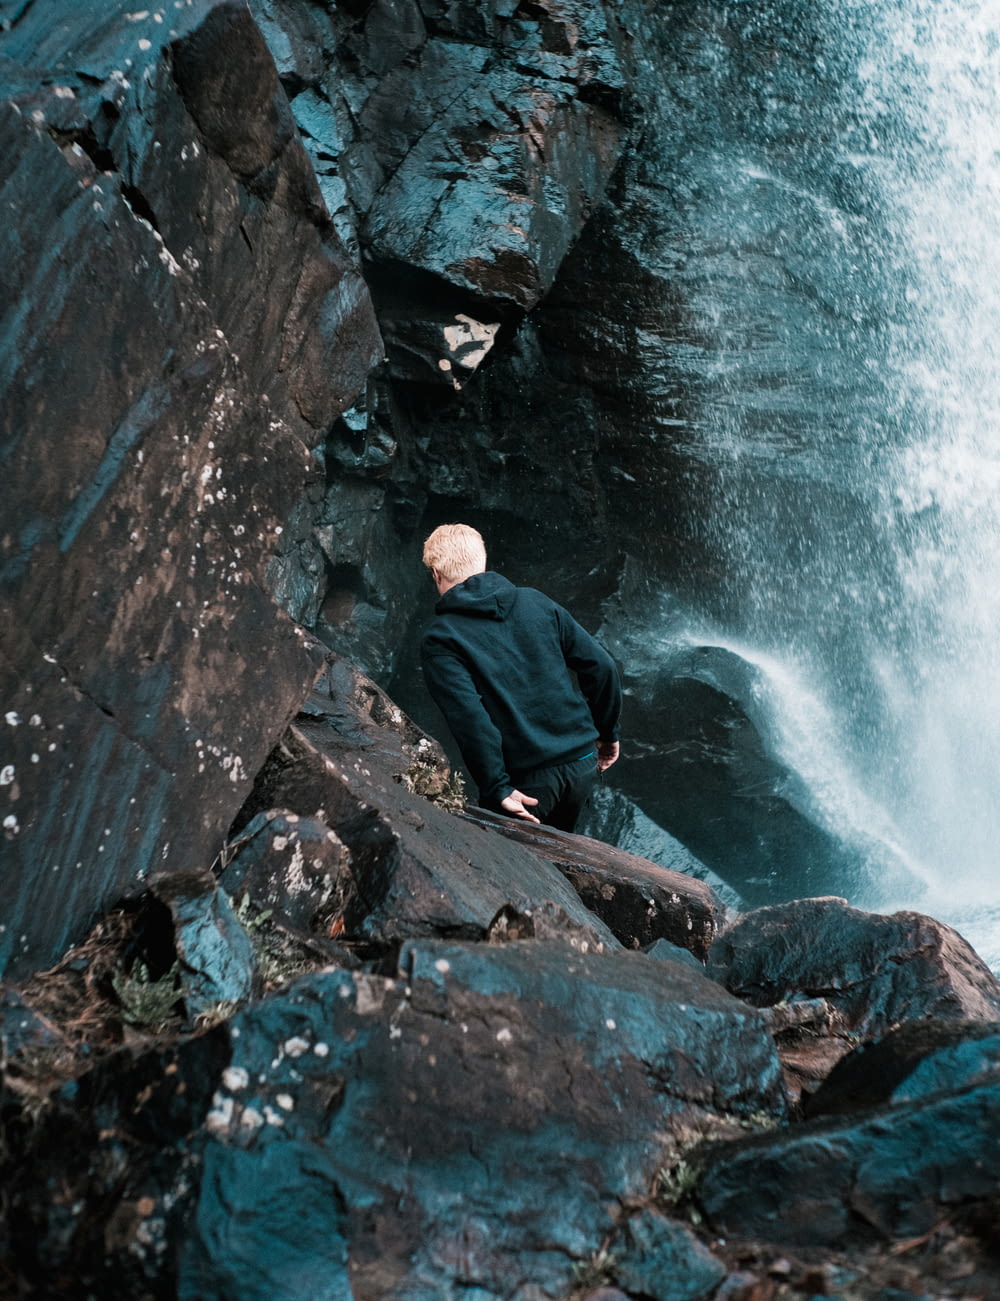 man in black jacket sitting on rock near water falls during daytime